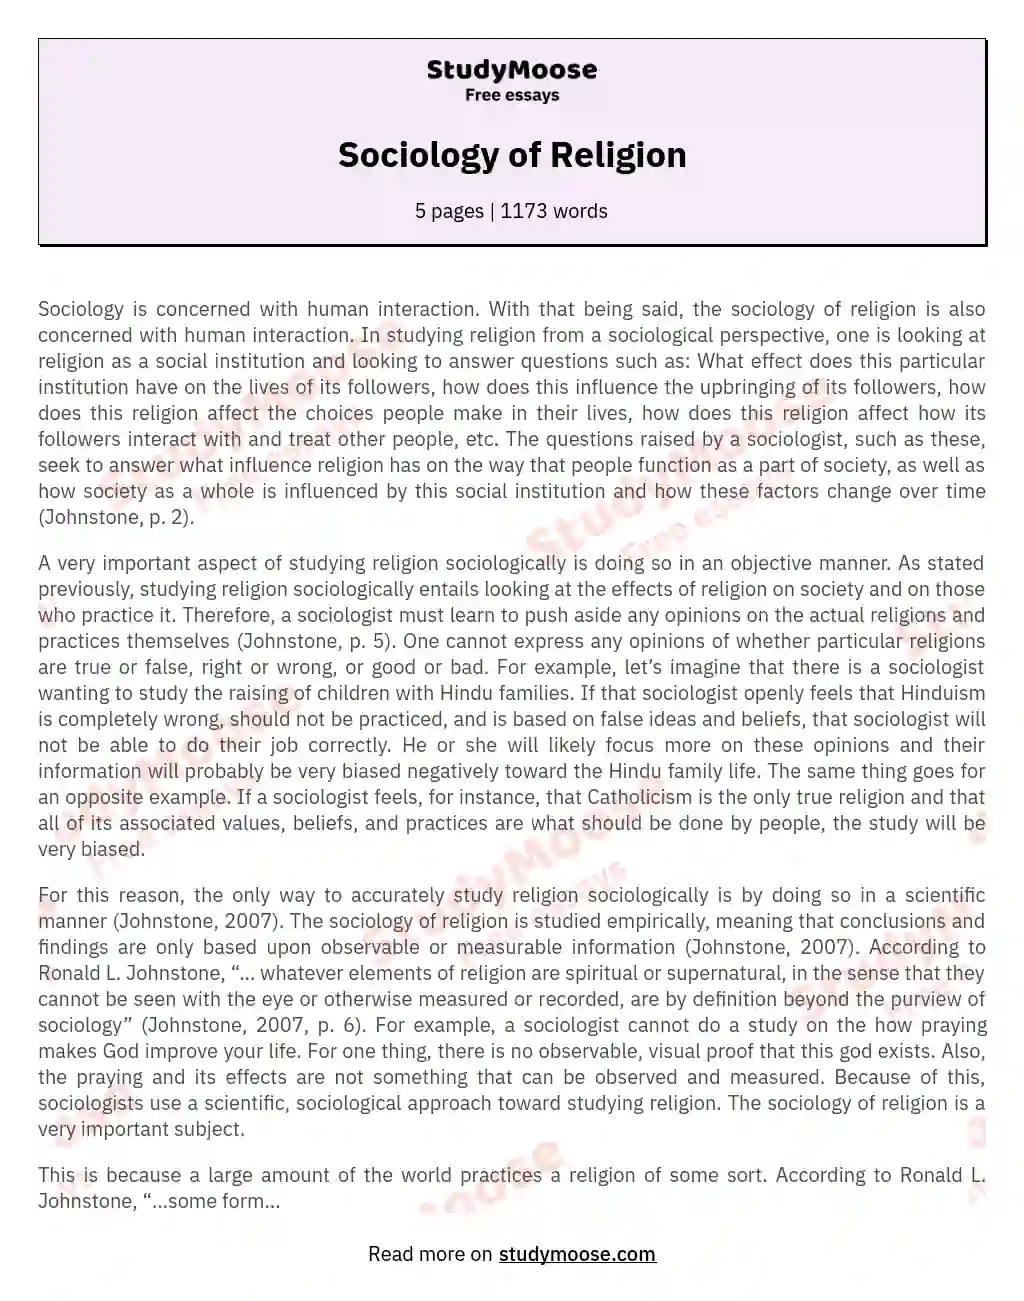 Sociology of Religion essay